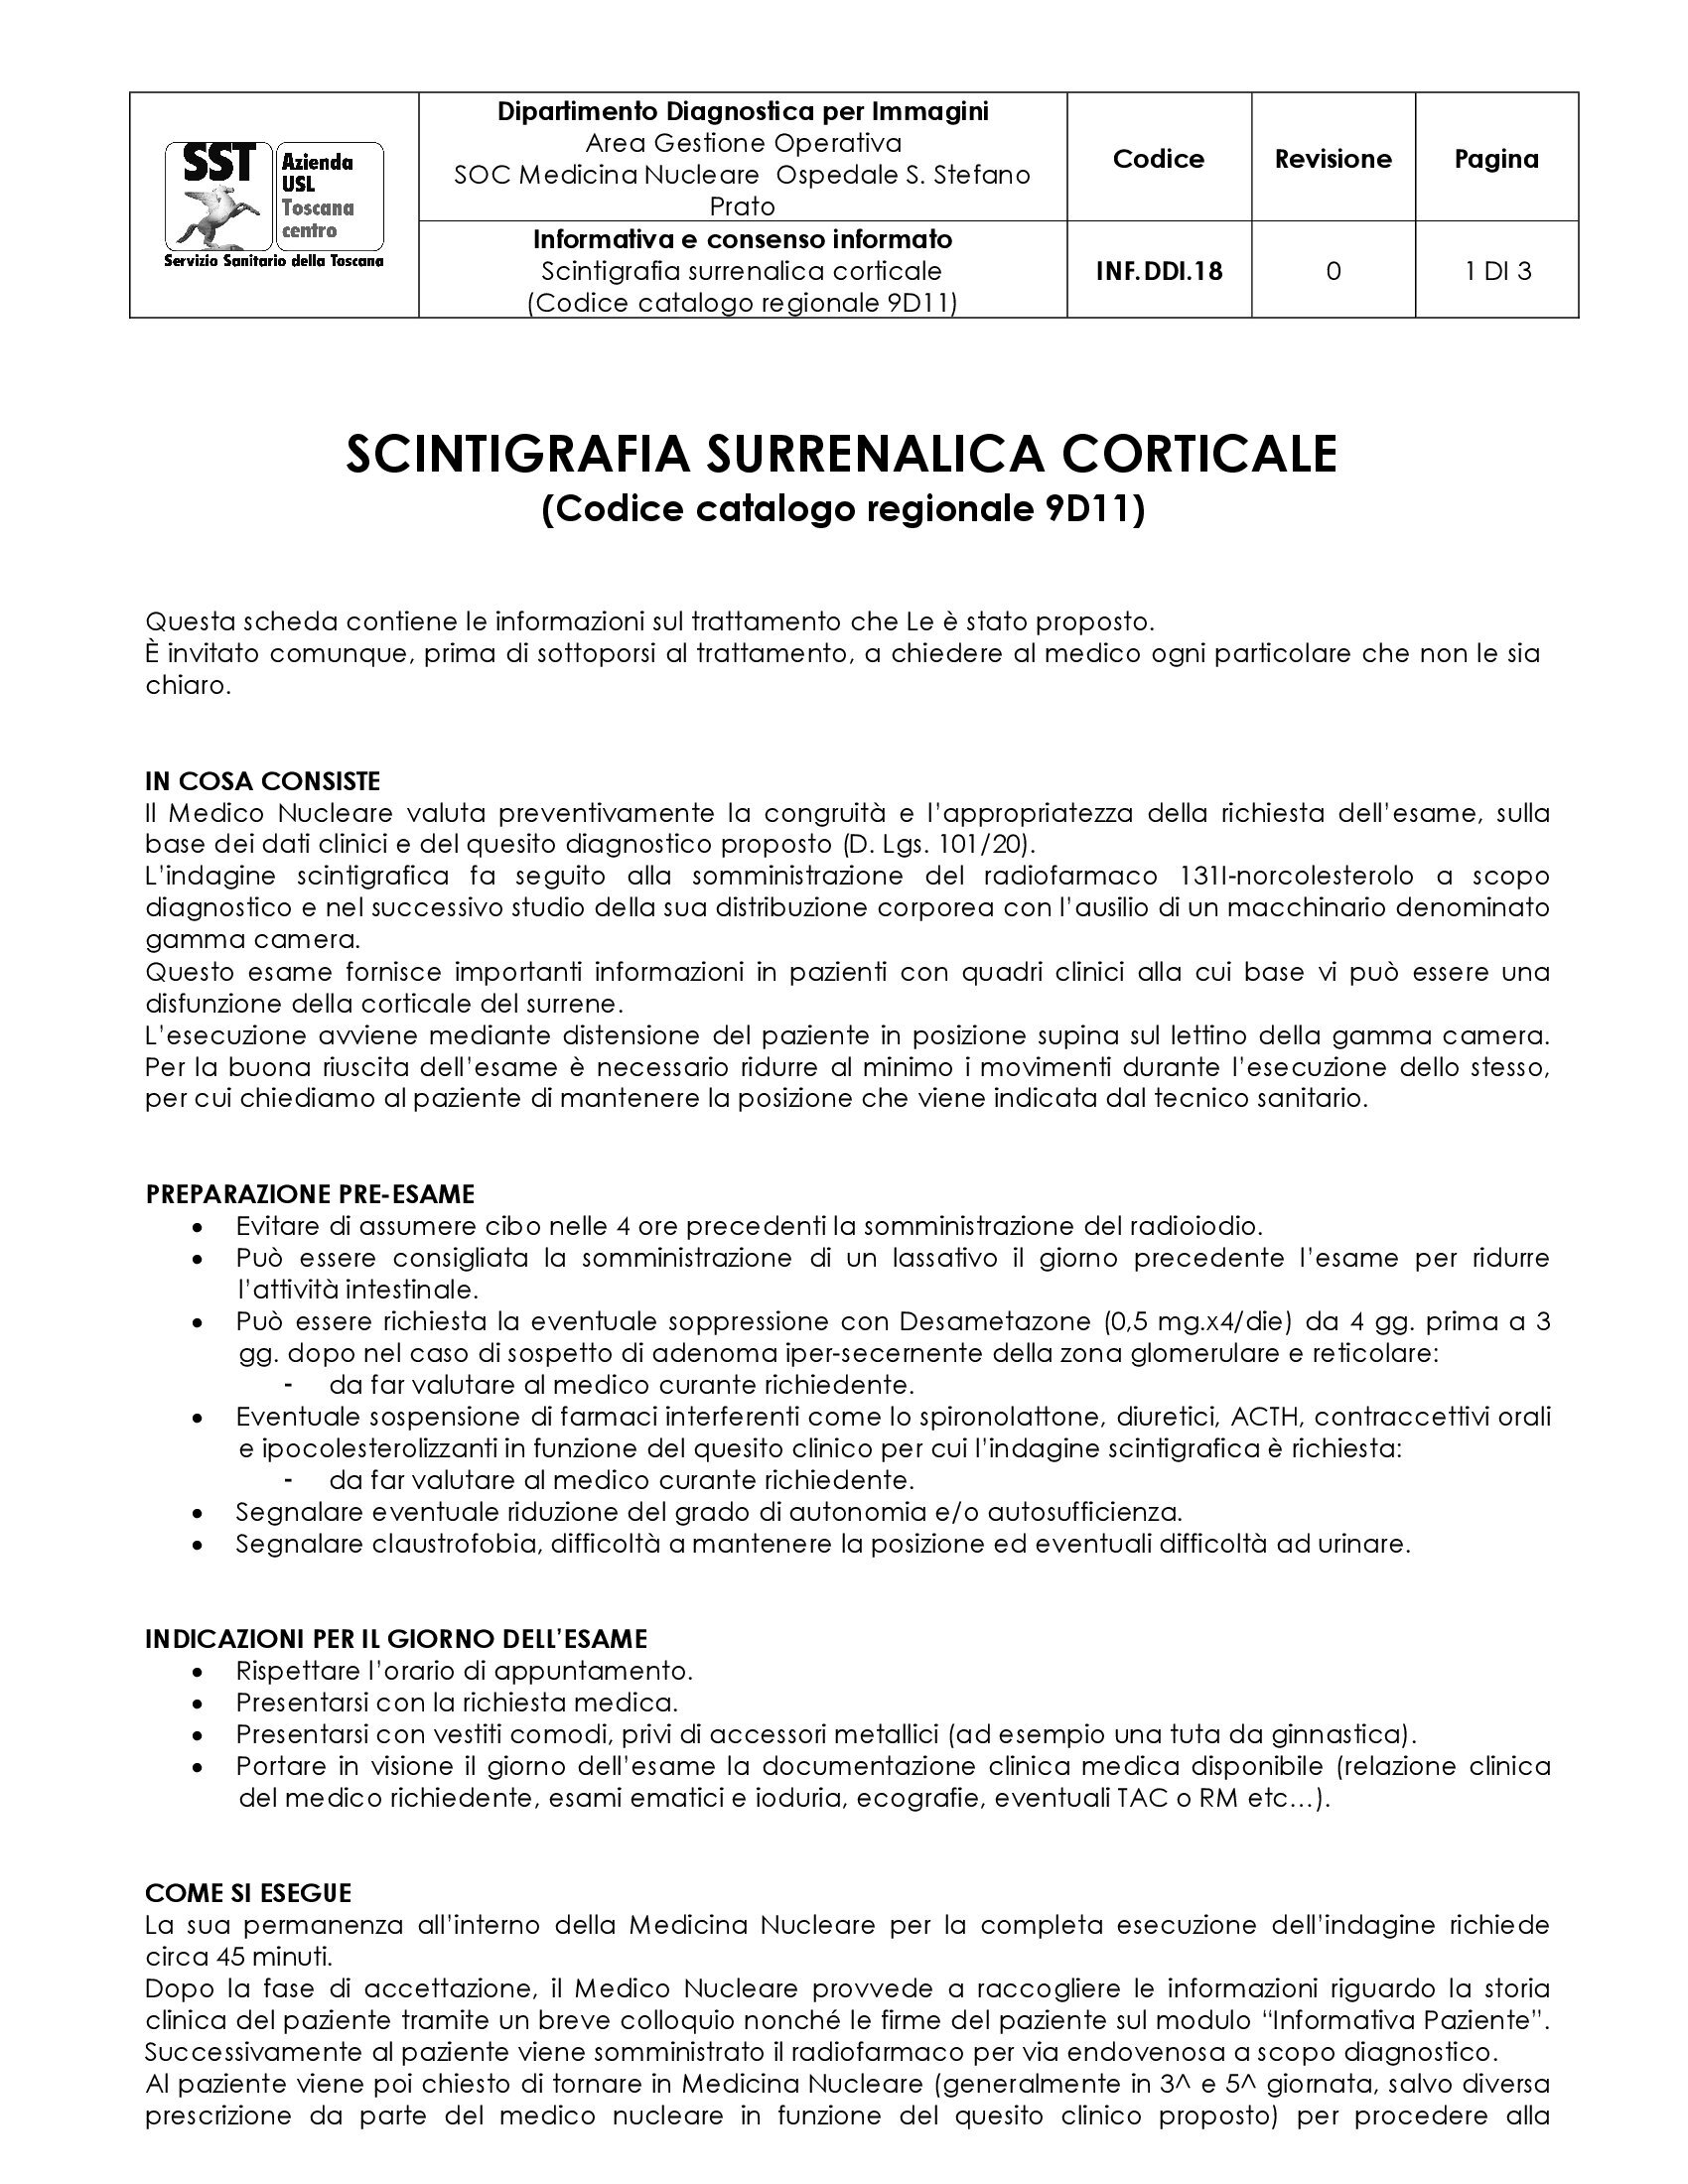 INF.DDI.18 Scintigrafia surrenalica corticale (Codice catalogo regionale 9D11)